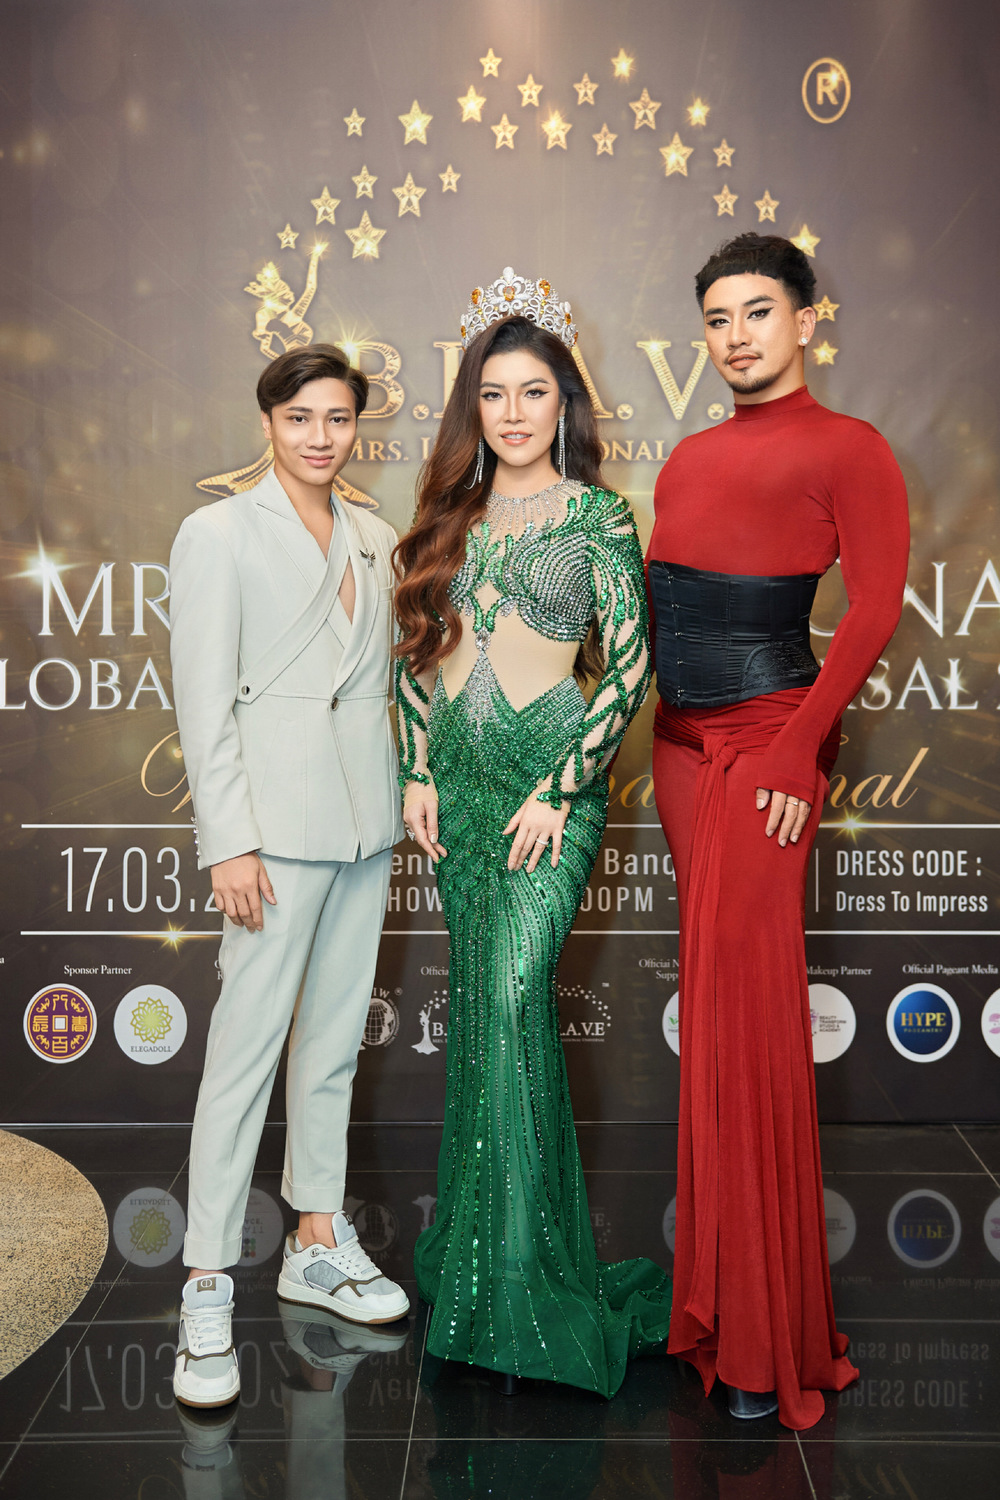 Hoa hậu Trần Hà Trâm Anh chấm thi cuộc thi quốc tế, bật khóc khi trao vương miện - Ảnh 8.